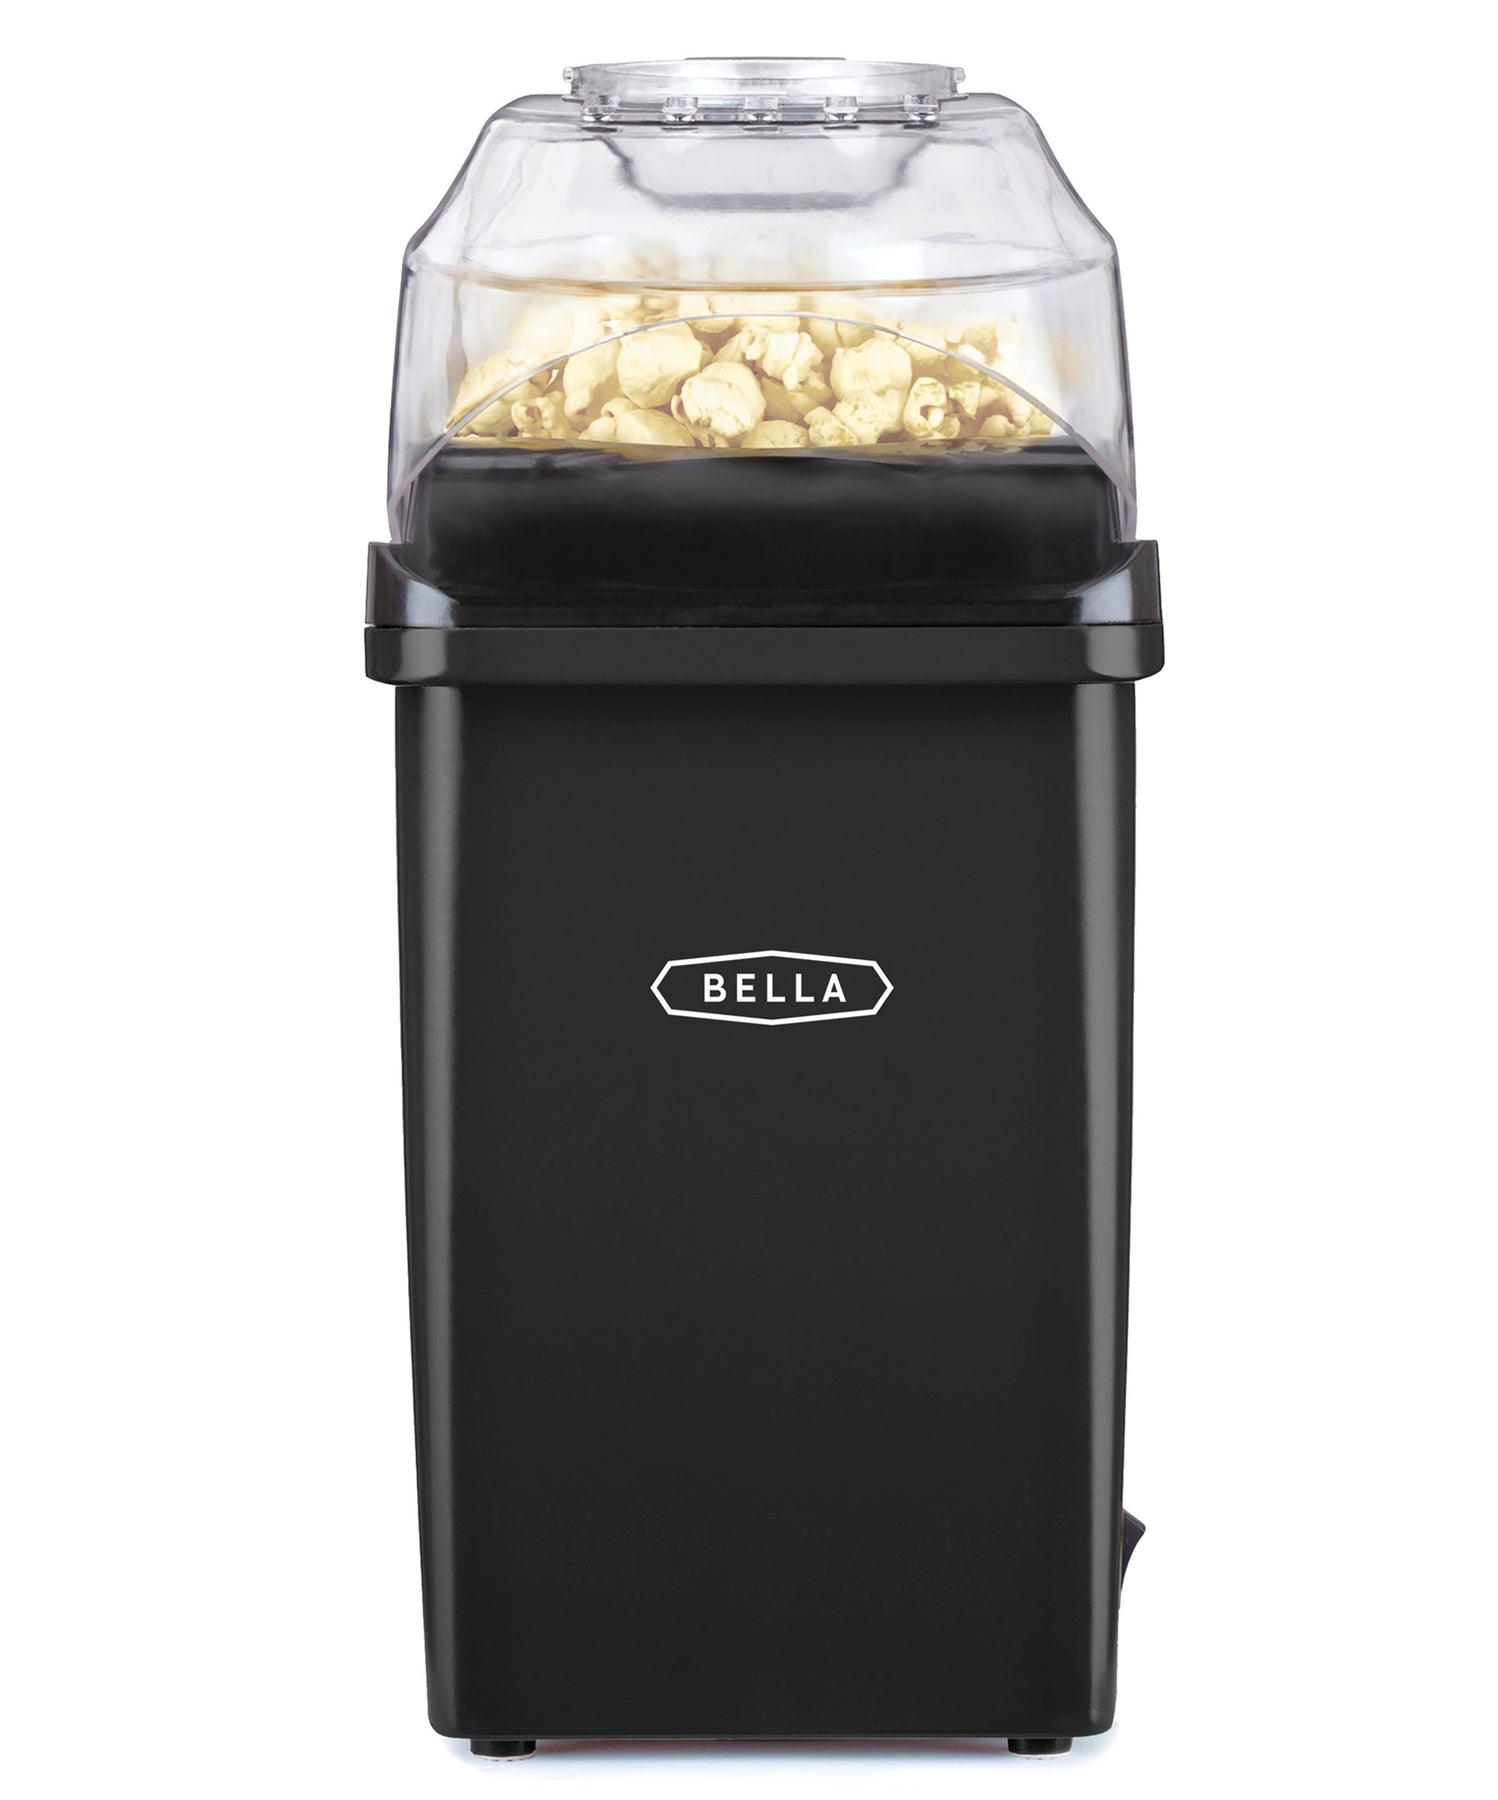 Sensio Bella Home Theatre Popcorn Maker & Accessories